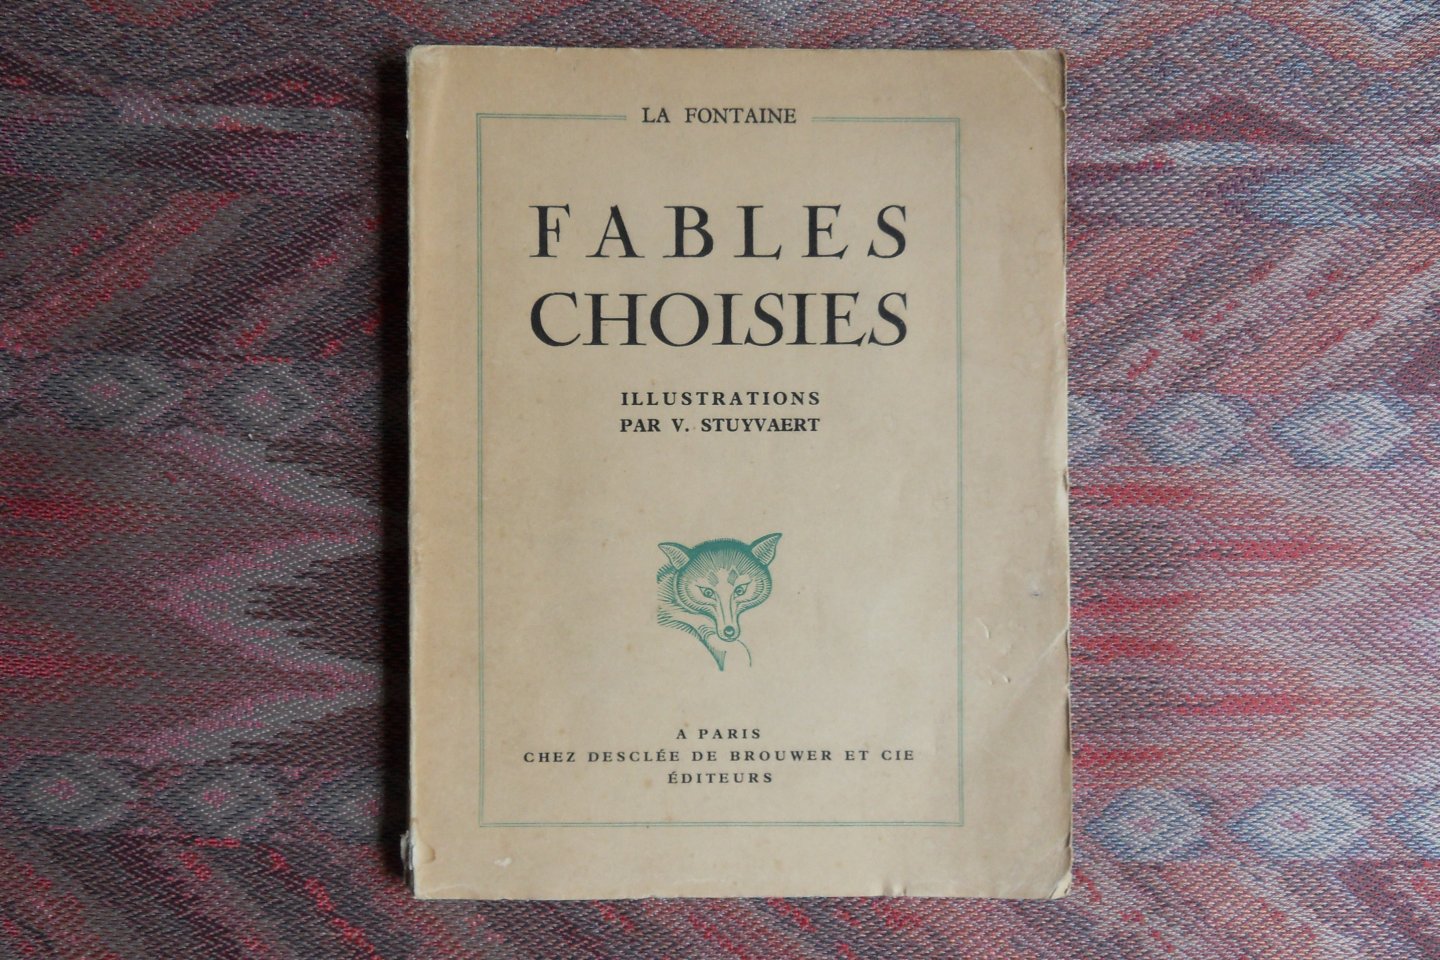 Fontaine, Jean de la. - Fables Choisies. - illustrations par V. Stuyvaert.